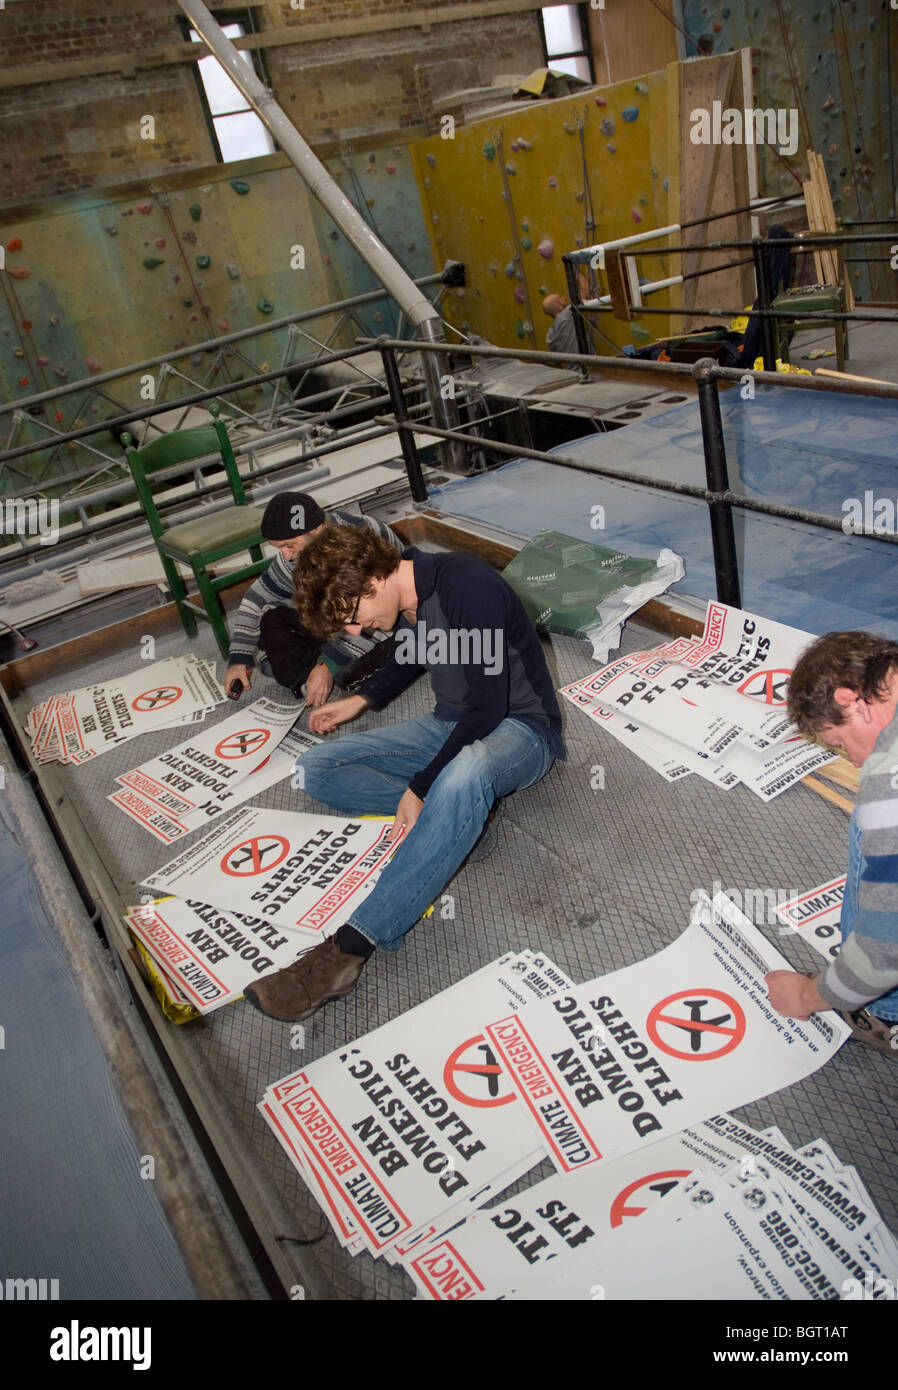 Los activistas ocupados haciendo cartel de la edición 2009 del rally de clima de emergencia Foto de stock